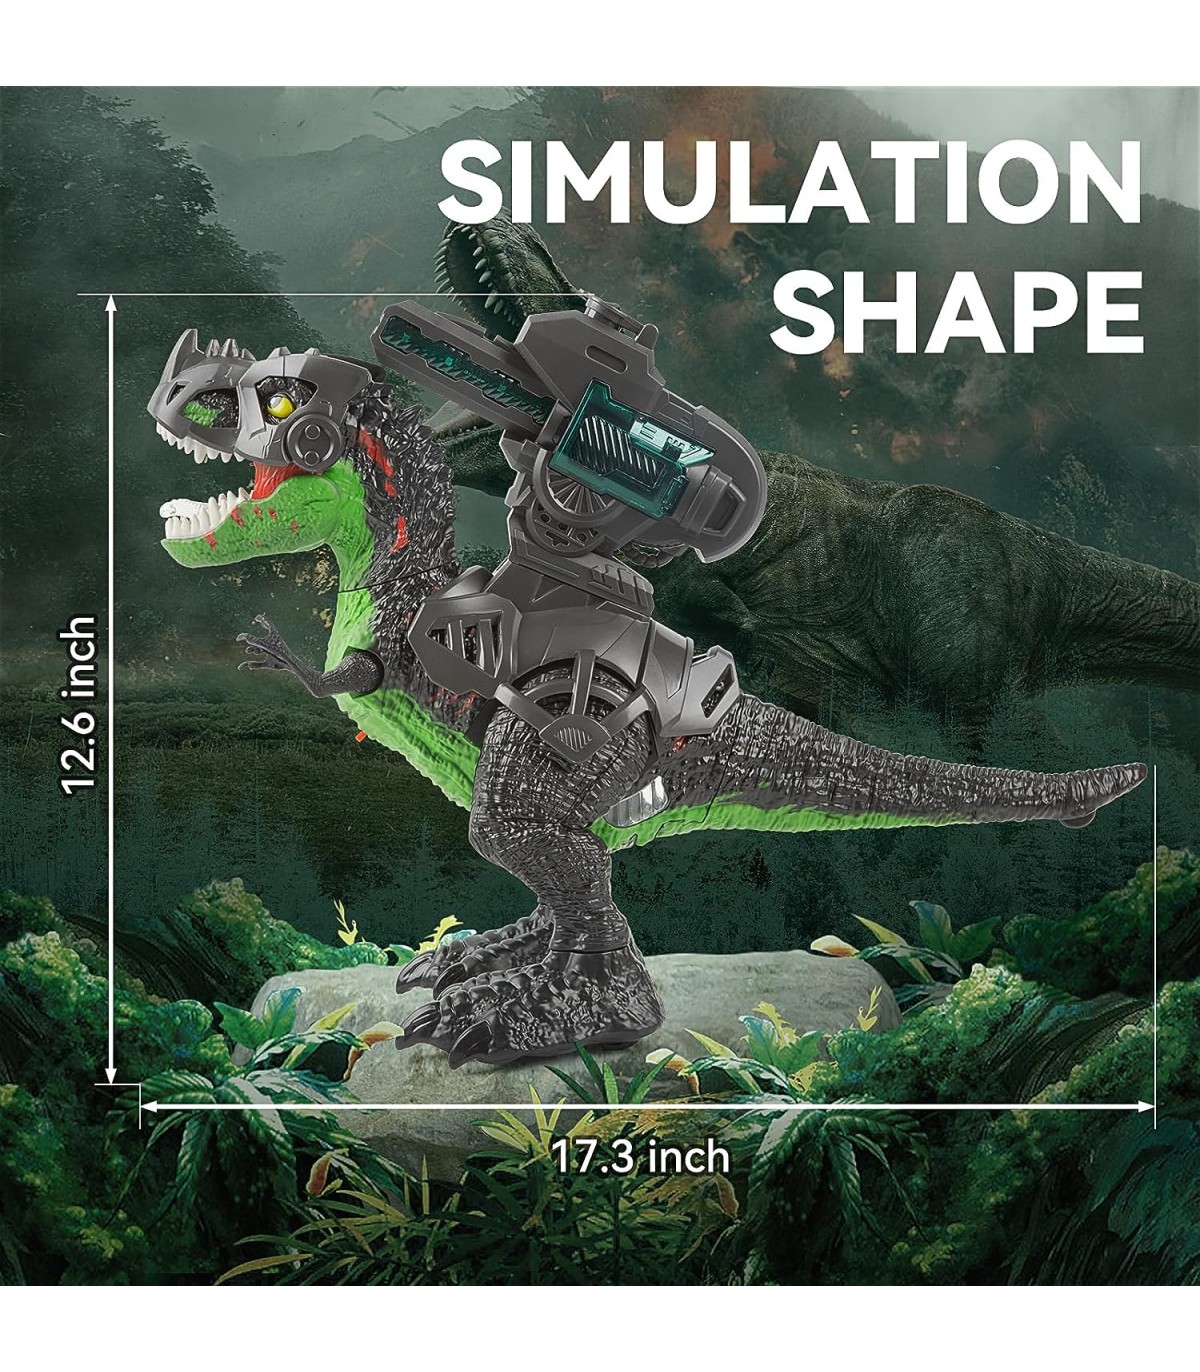 Rodando o jogo do T-Rex em um testador de componentes - Dragão sem